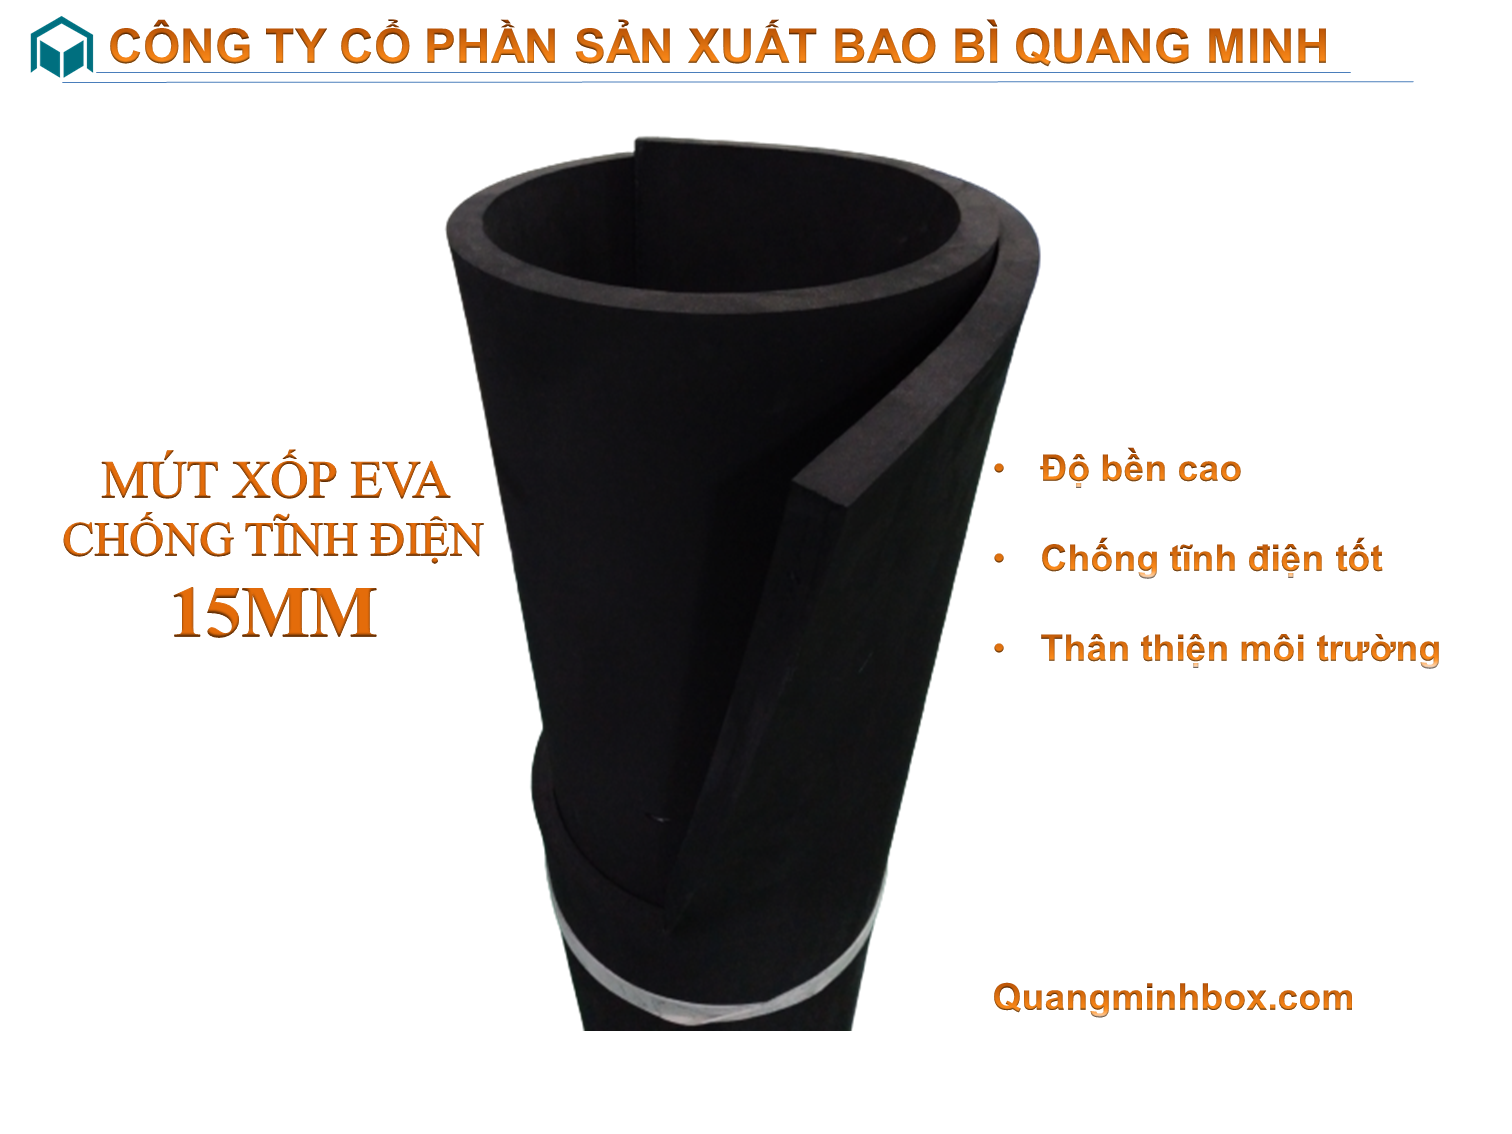 mut-xop-eva-chong-tinh-dien-15mm